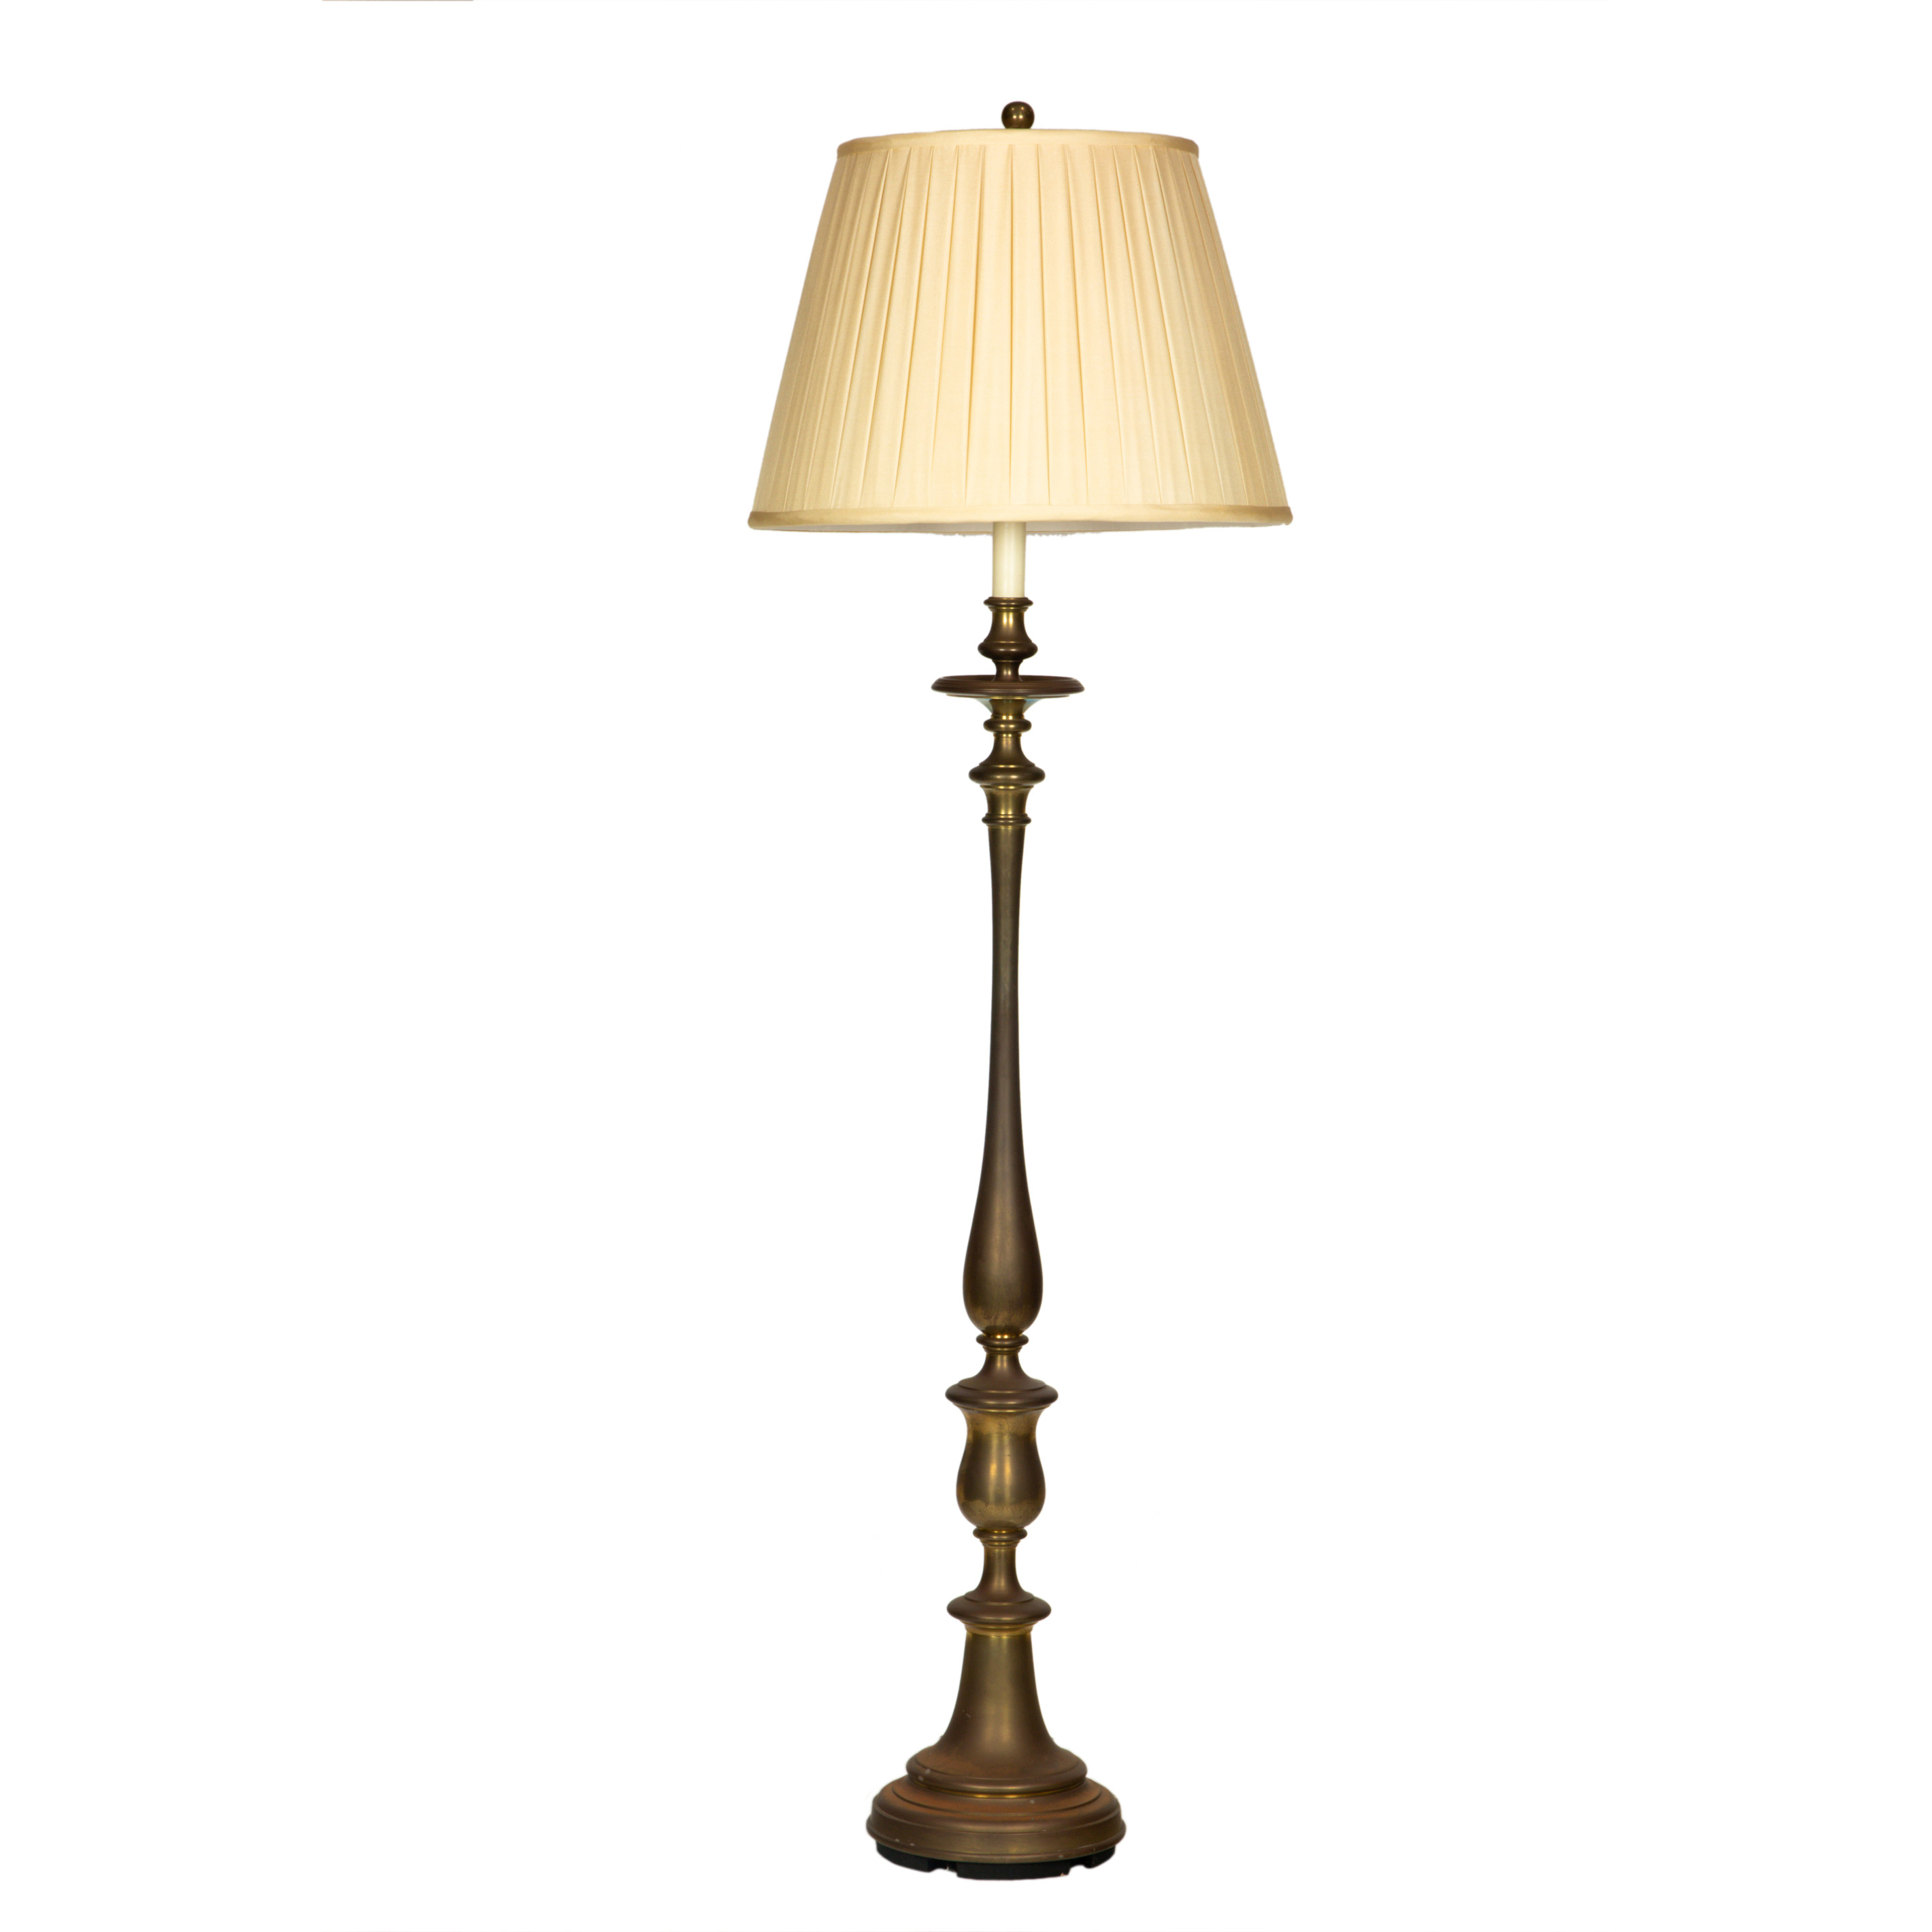 RALPH LAUREN FLOOR LAMP Ralph Lauren 3a3717